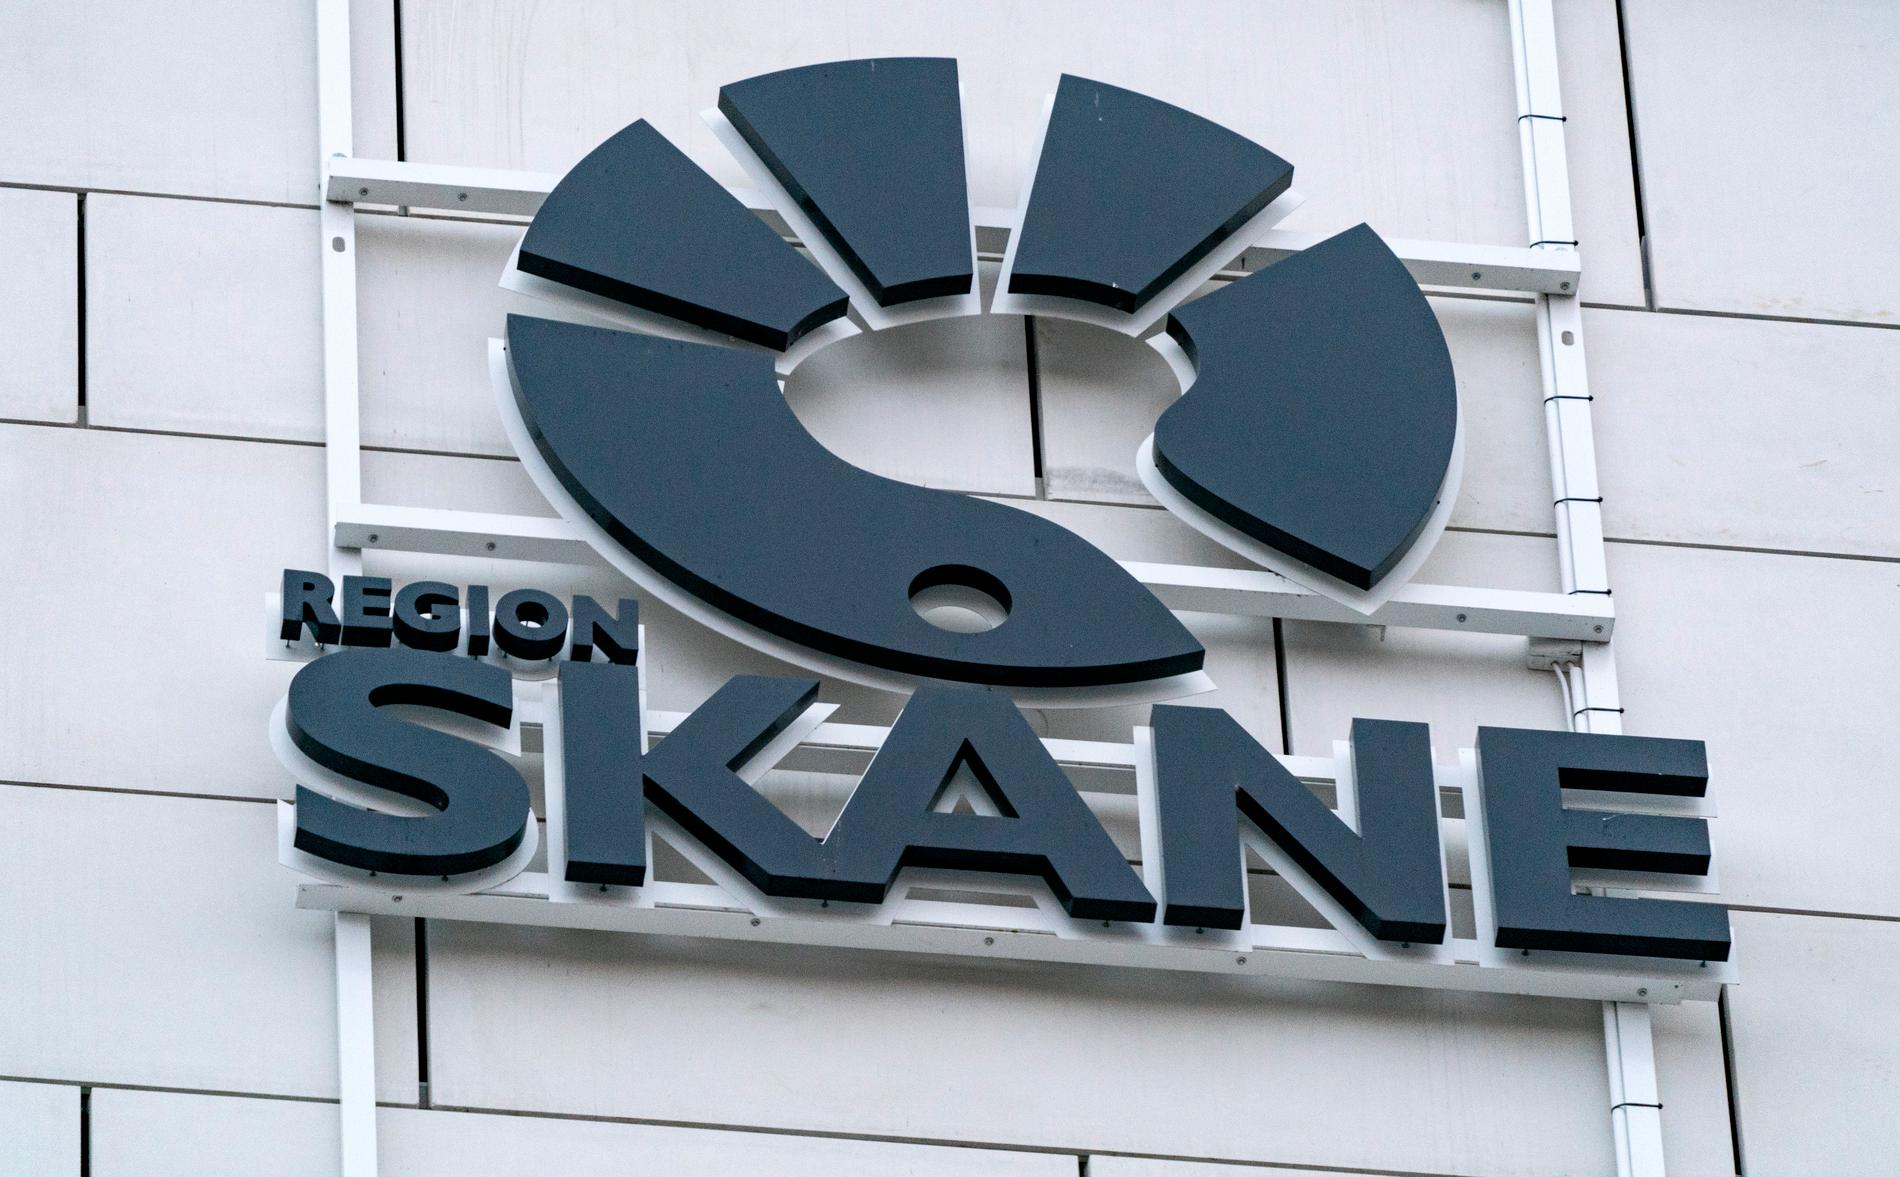 Region Skånes logga på en fasad.